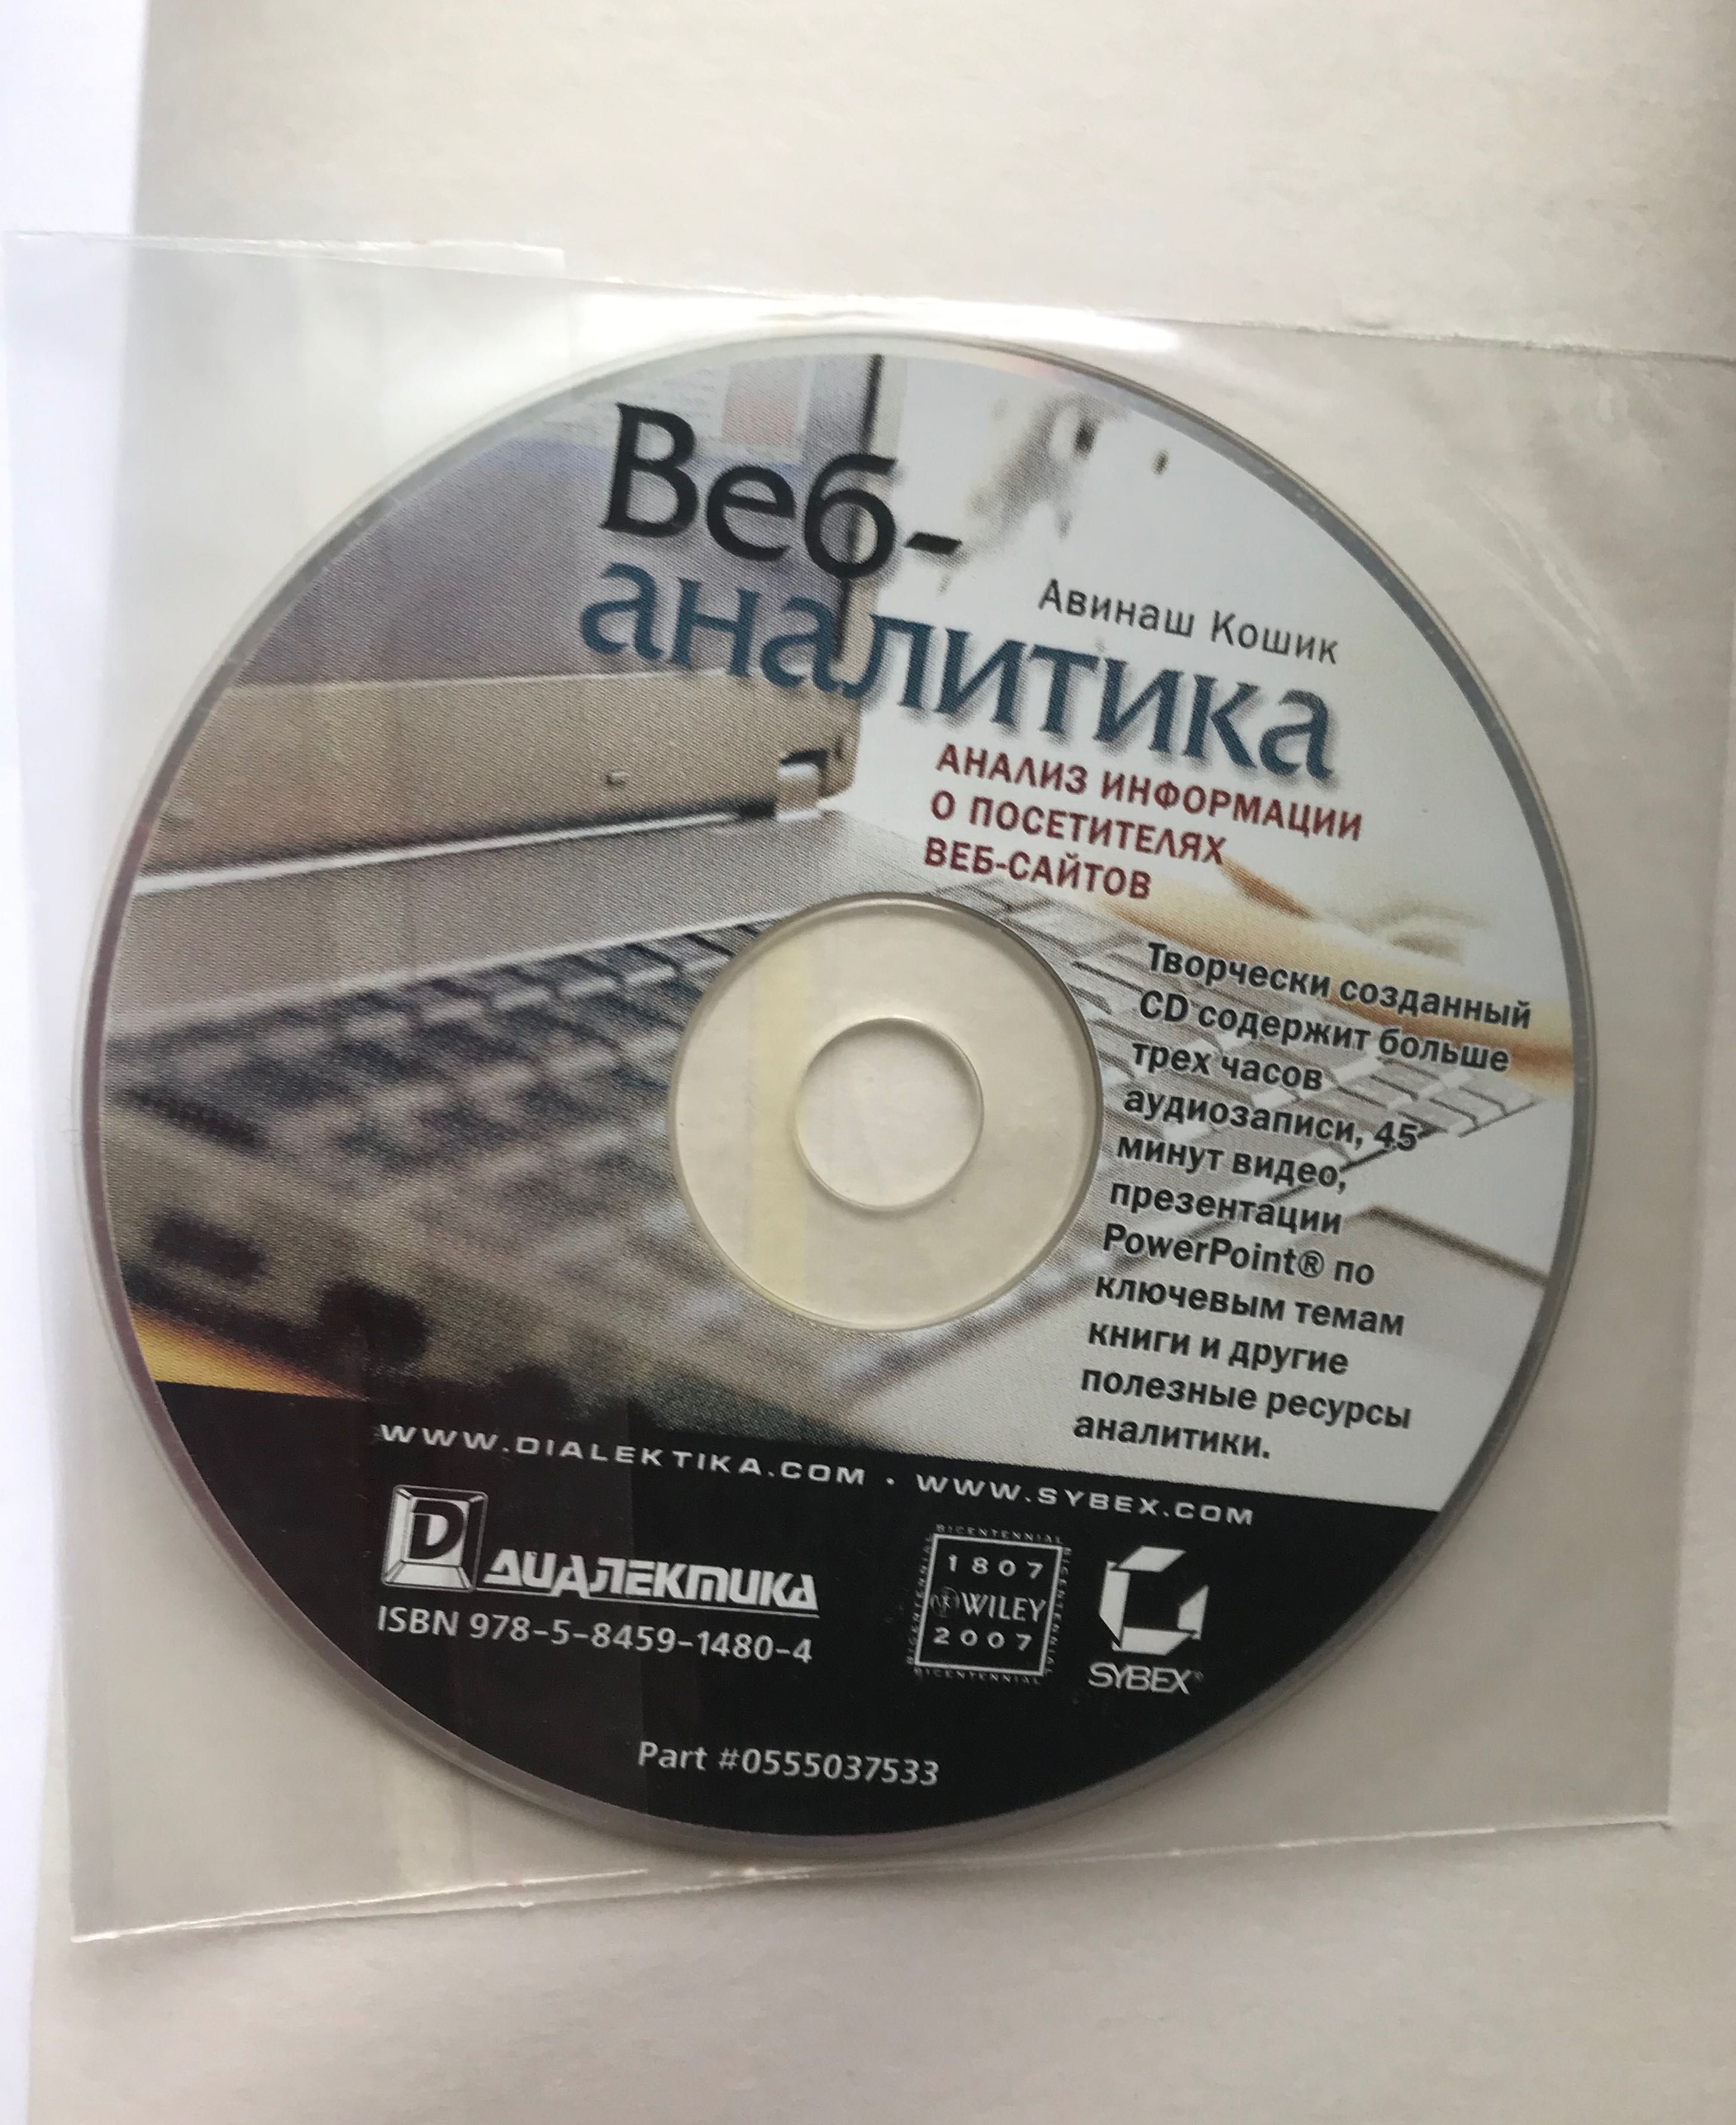 Книга Веб-аналитика. Кошик Авинаш. CD диск в комплекте